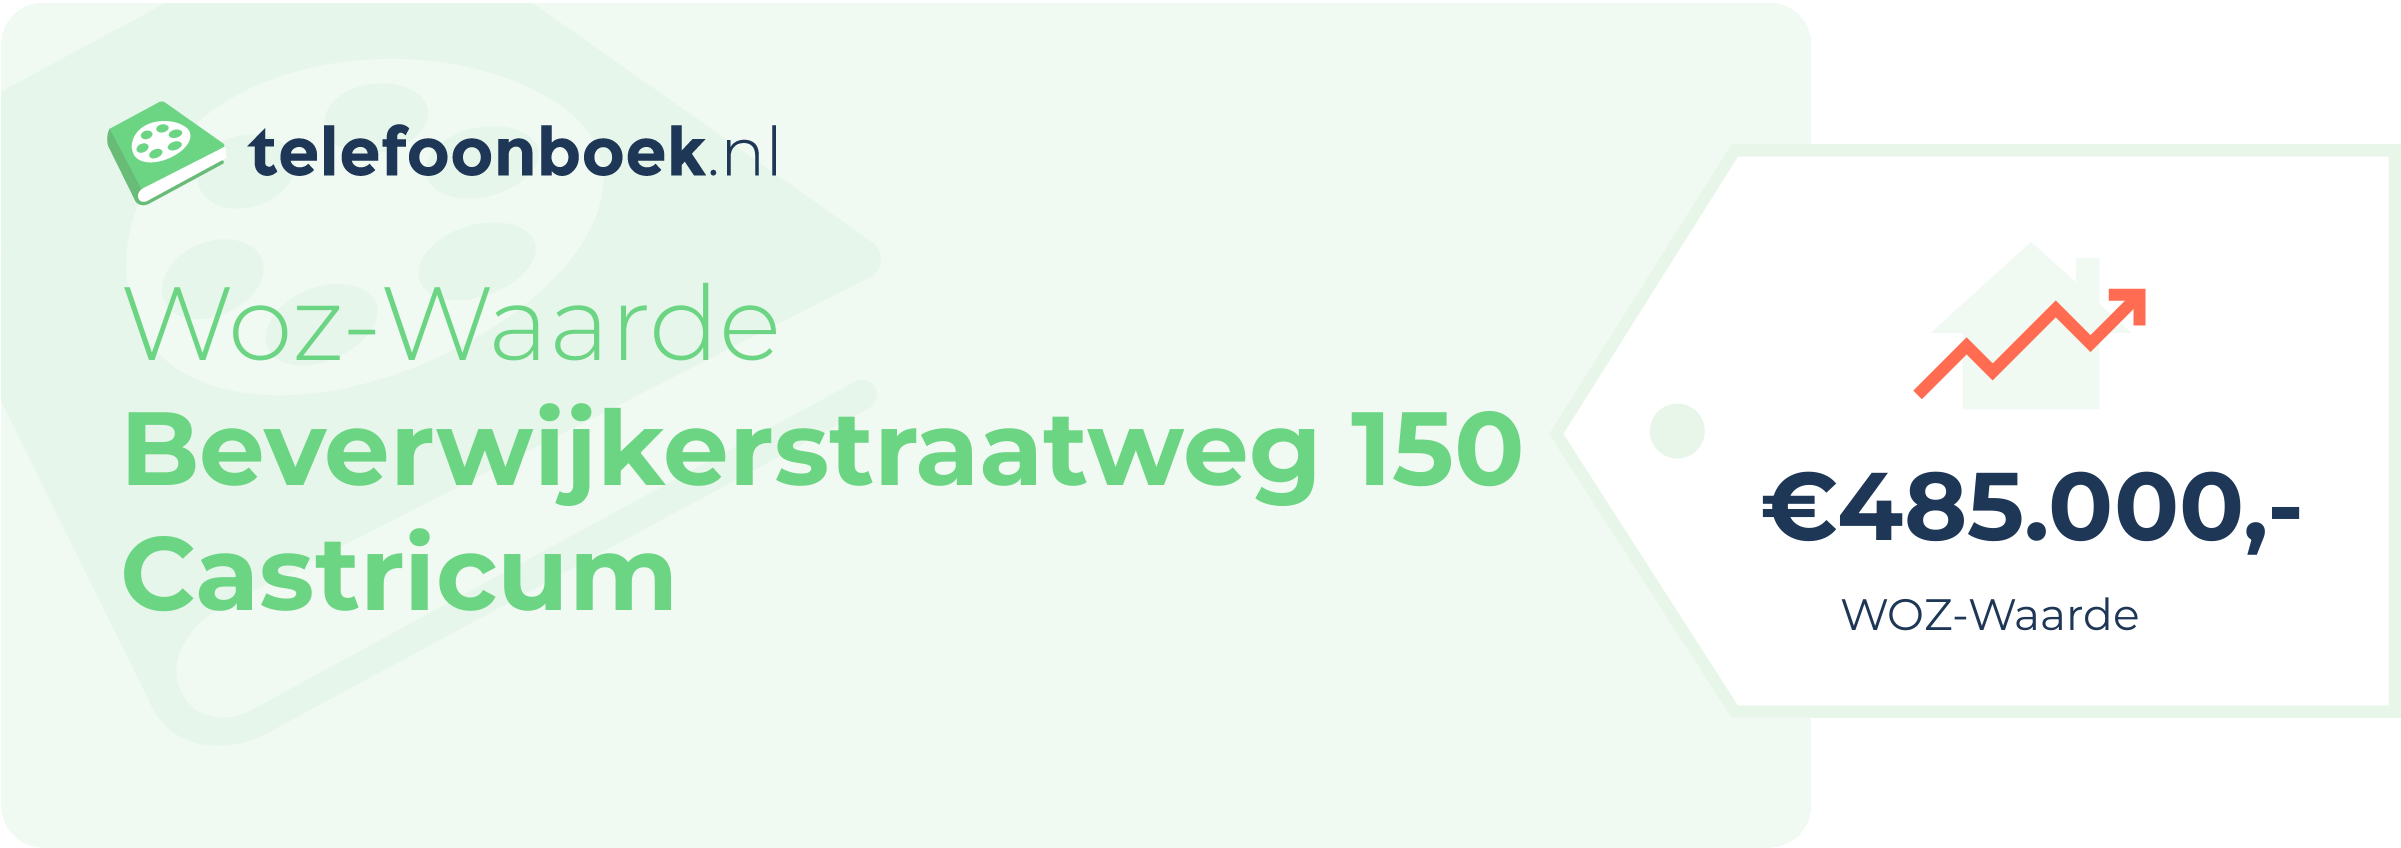 WOZ-waarde Beverwijkerstraatweg 150 Castricum